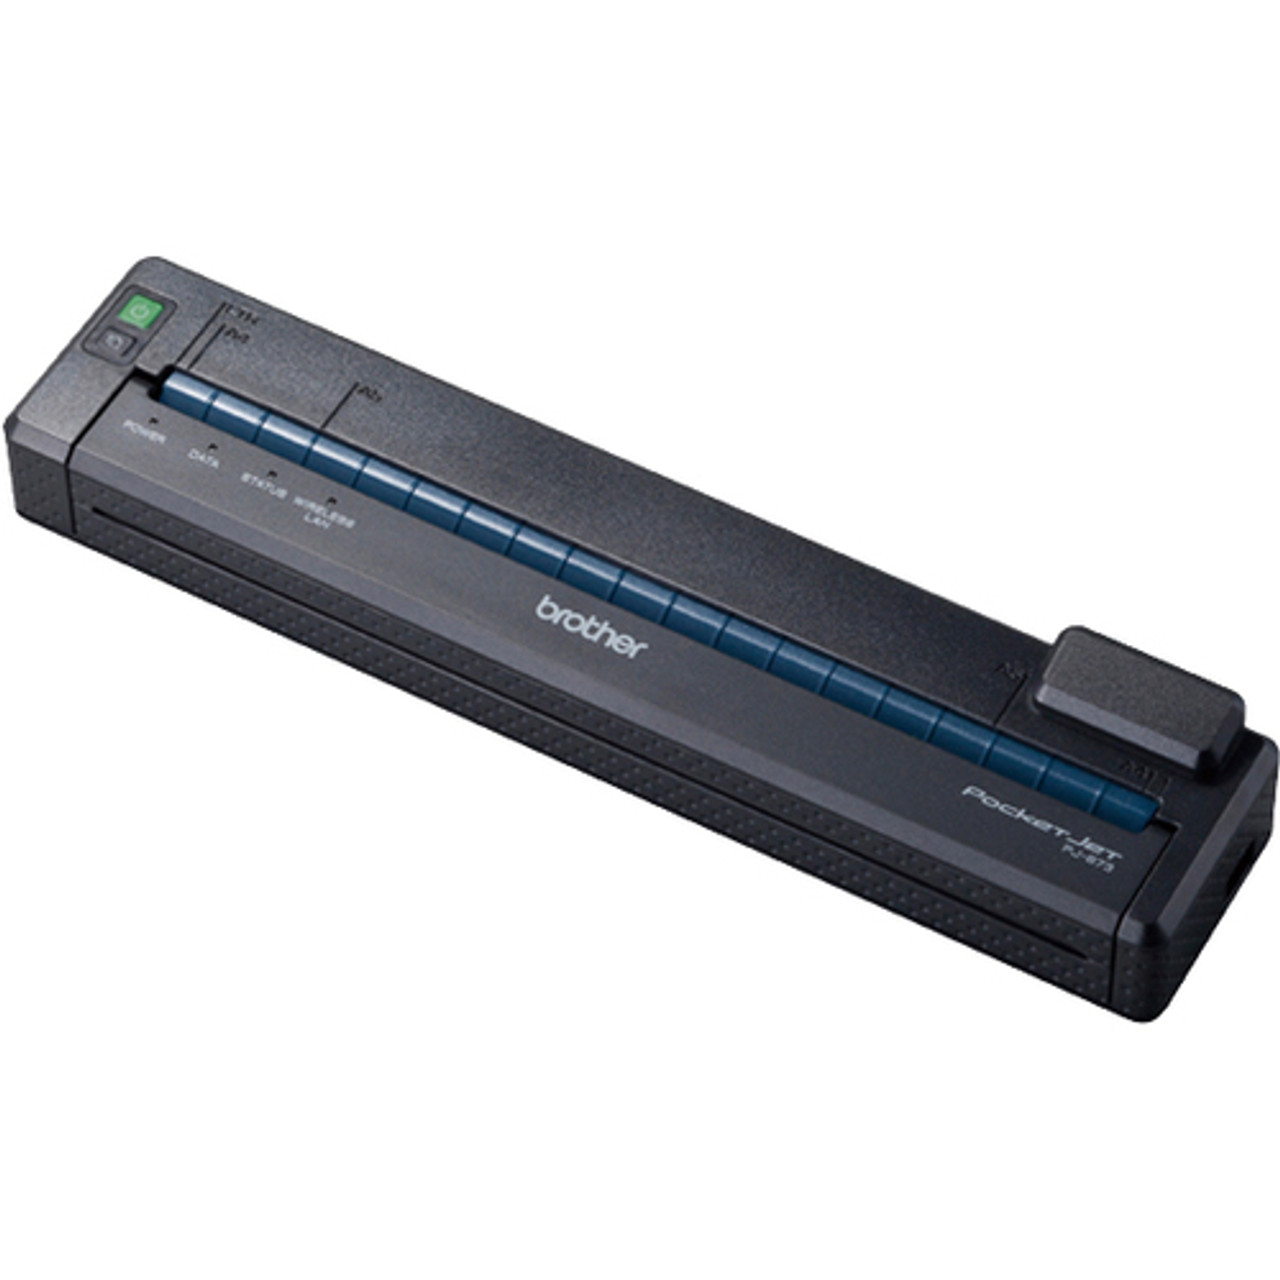 Brother PocketJet PJ-673 Direct Thermal Printer - Monochrome - Portable -  Plain Paper Print - USB PJ673